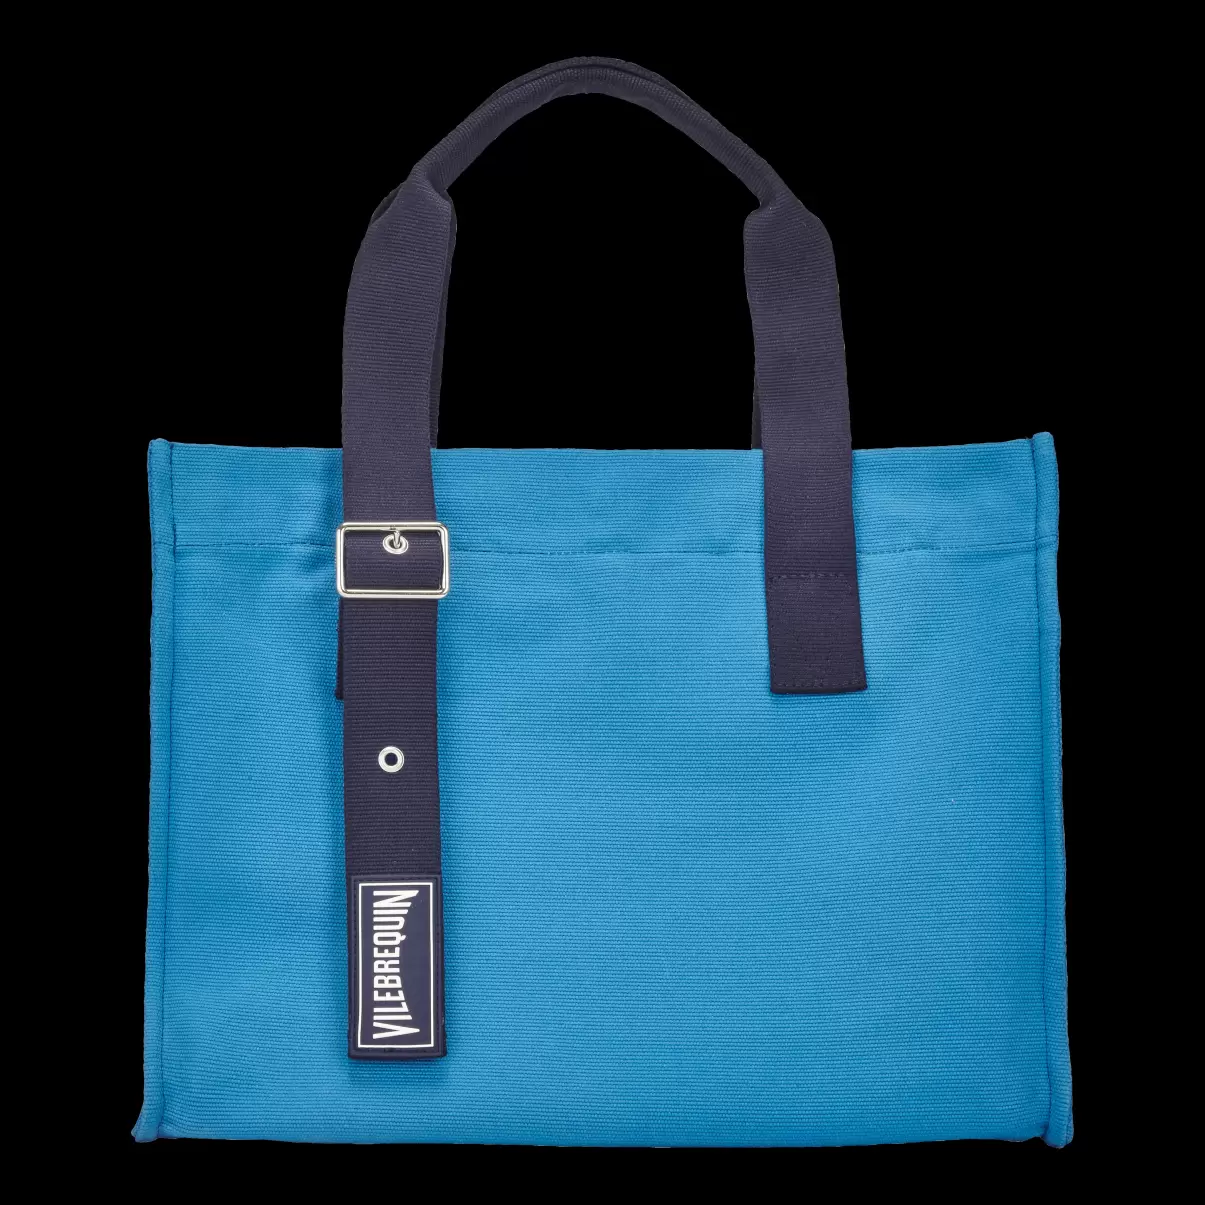 Calanque / Azul Bolsa De Playa Pequeña De Algodón Con Estampado Liso Vilebrequin Promoción Bolsos Y Bolsas De Playa Hombre - 2